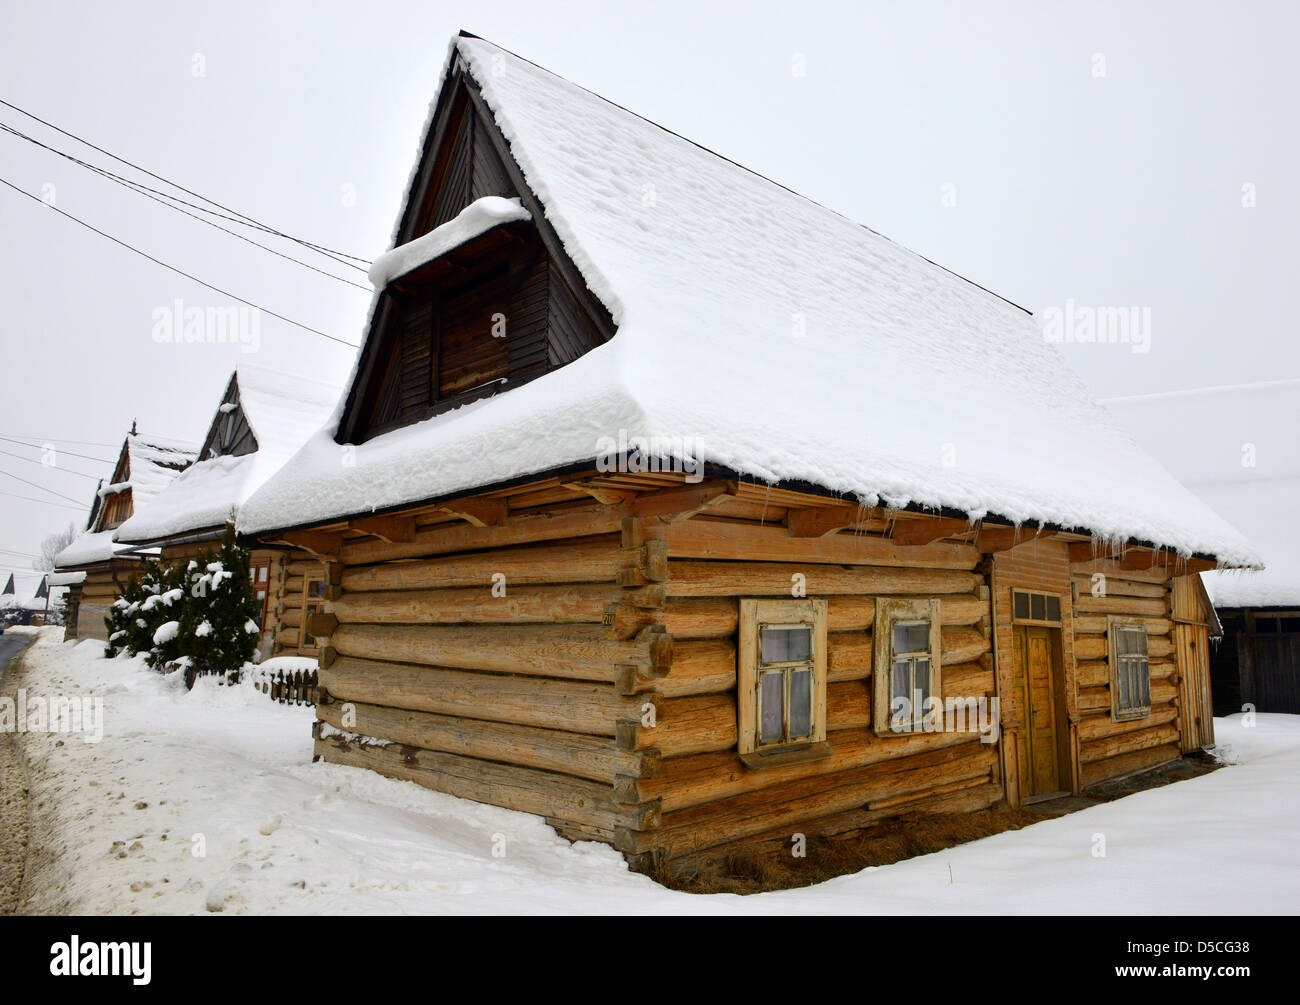 Maisons en bois couvertes de neige dans le pittoresque village de Chocholow en montagnes Tatras près de Zakopane Pologne. Banque D'Images